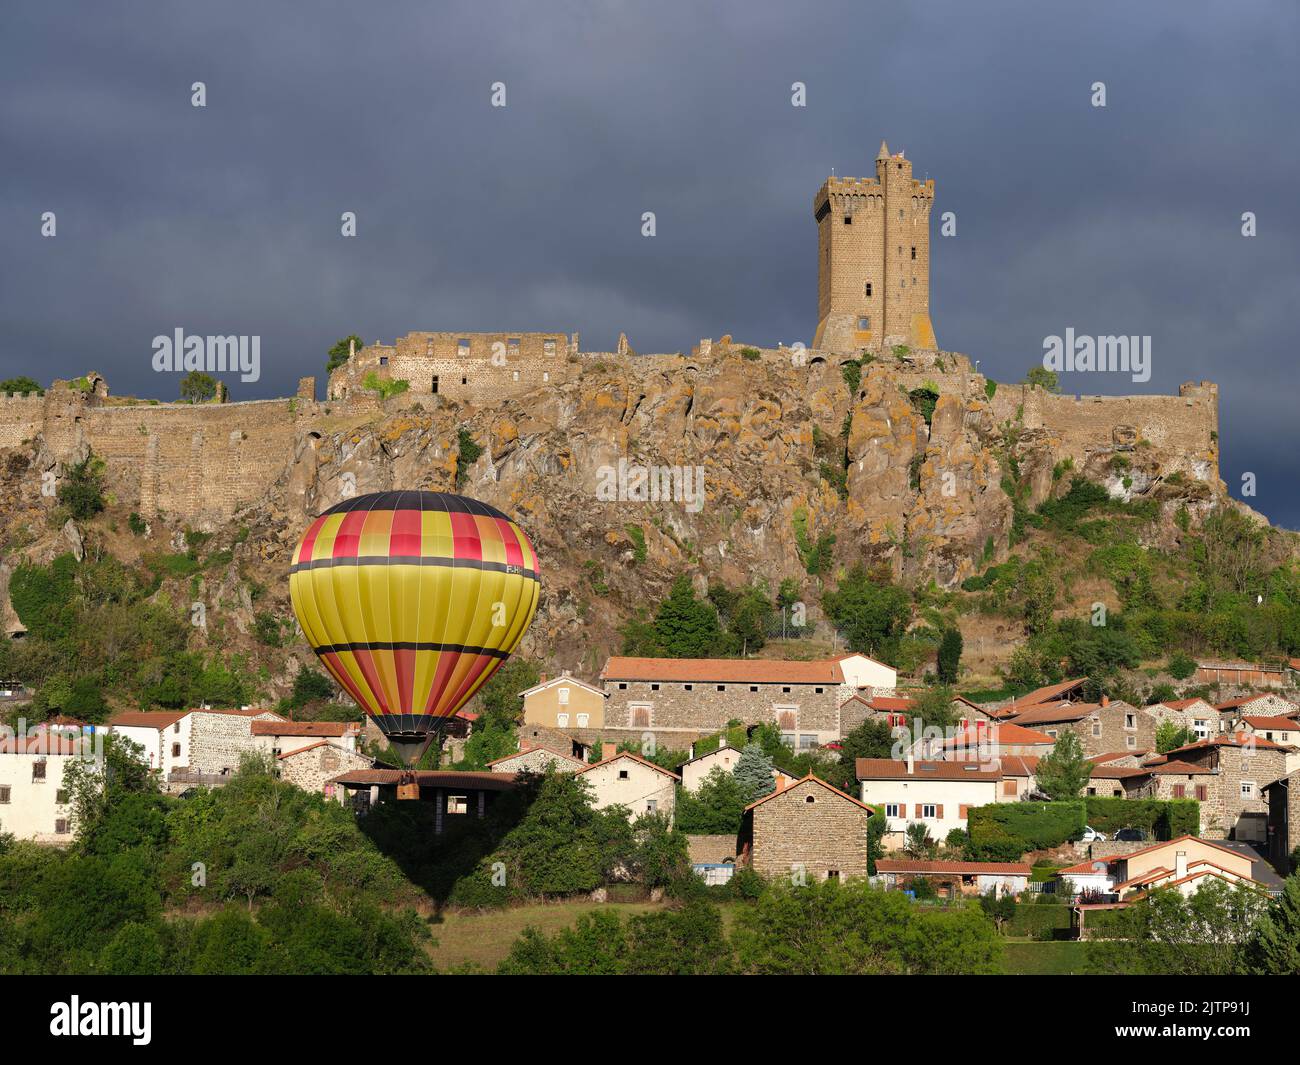 Heißluftballon, der in der Nähe einer mittelalterlichen Festung auf einer vulkanischen mesa schwebt. Polignac, Haute-Loire, Auvergne-Rhône-Alpes, Frankreich. Stockfoto